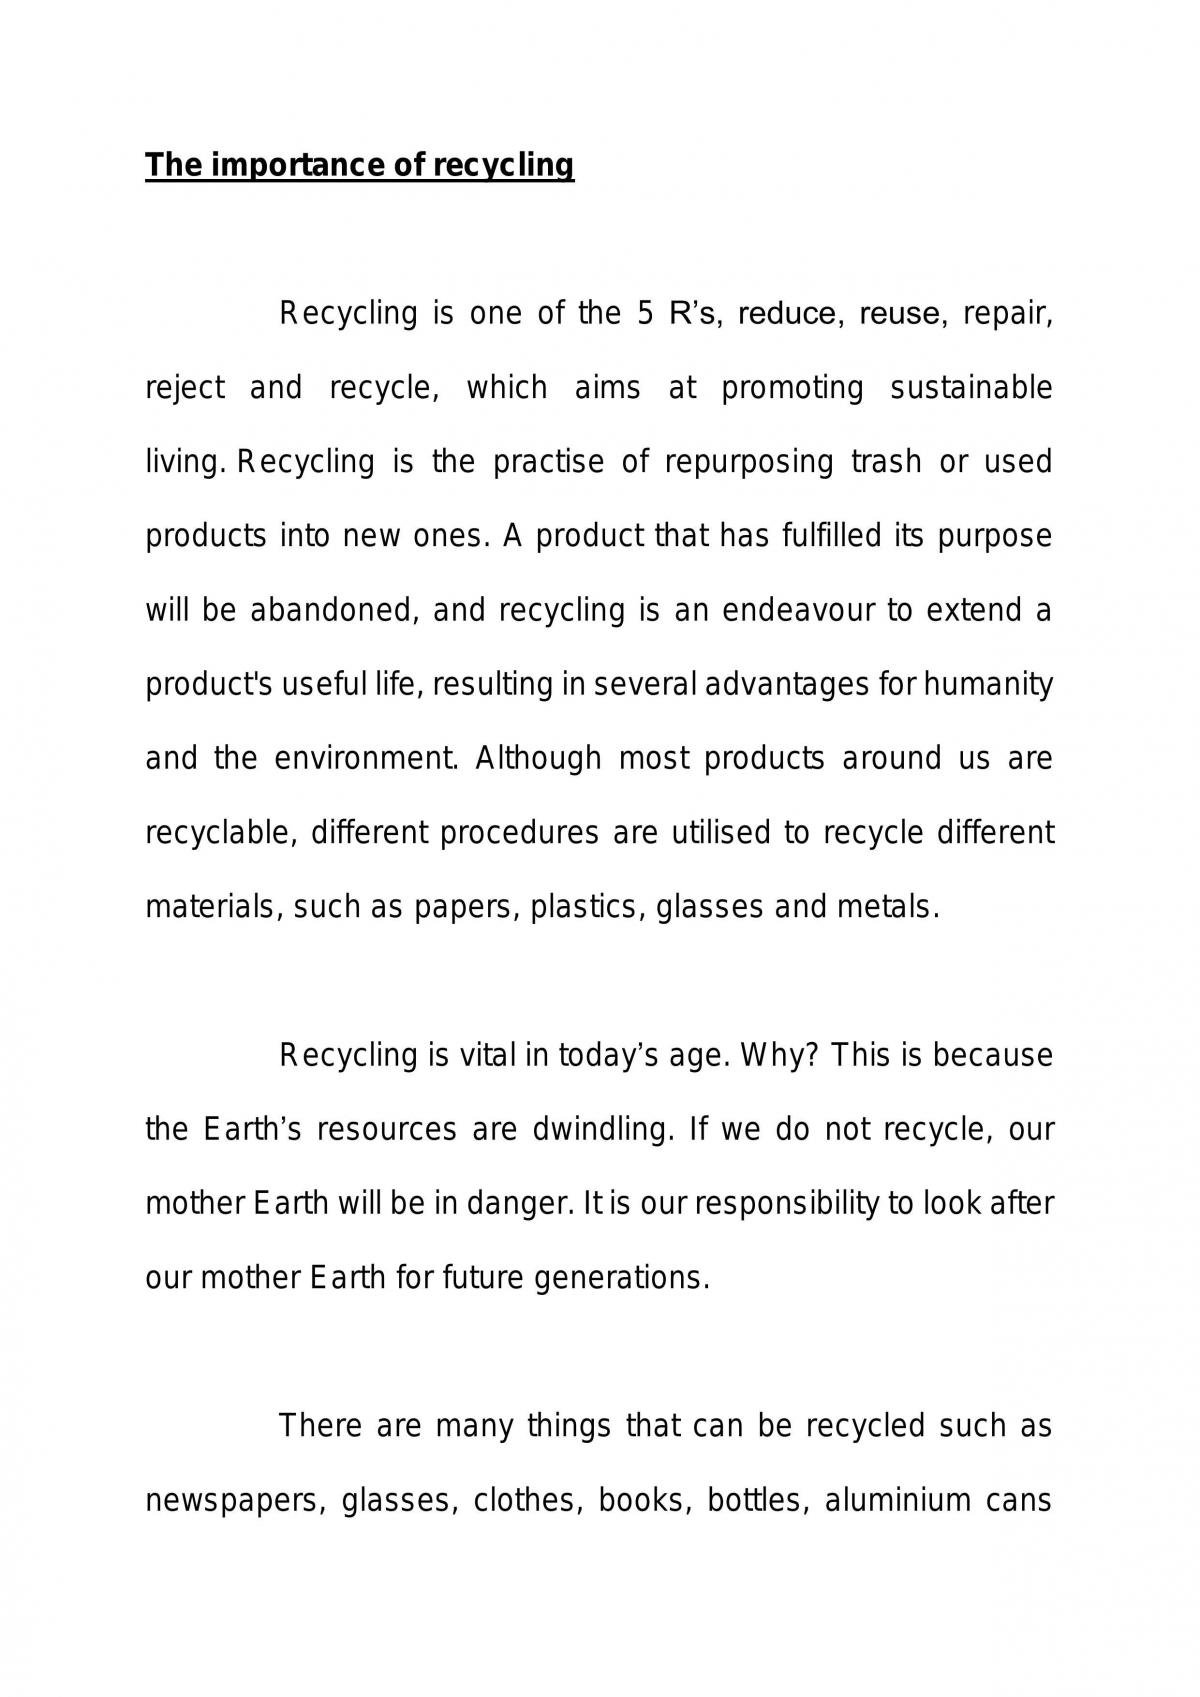 essay on reuse of waste